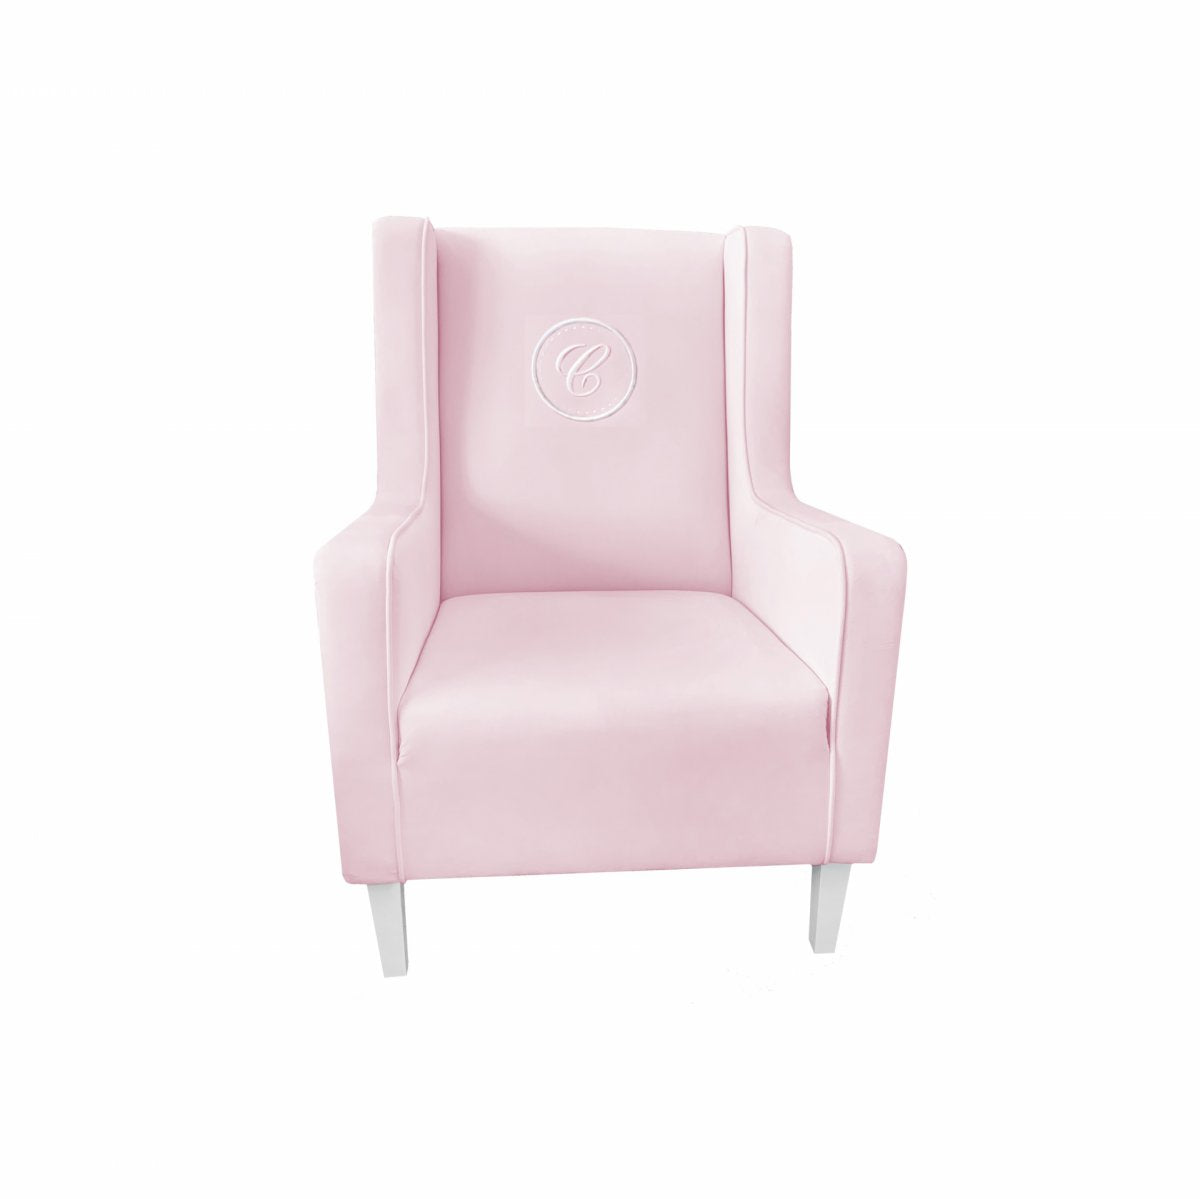 Armchair Modern Pink with Emblem